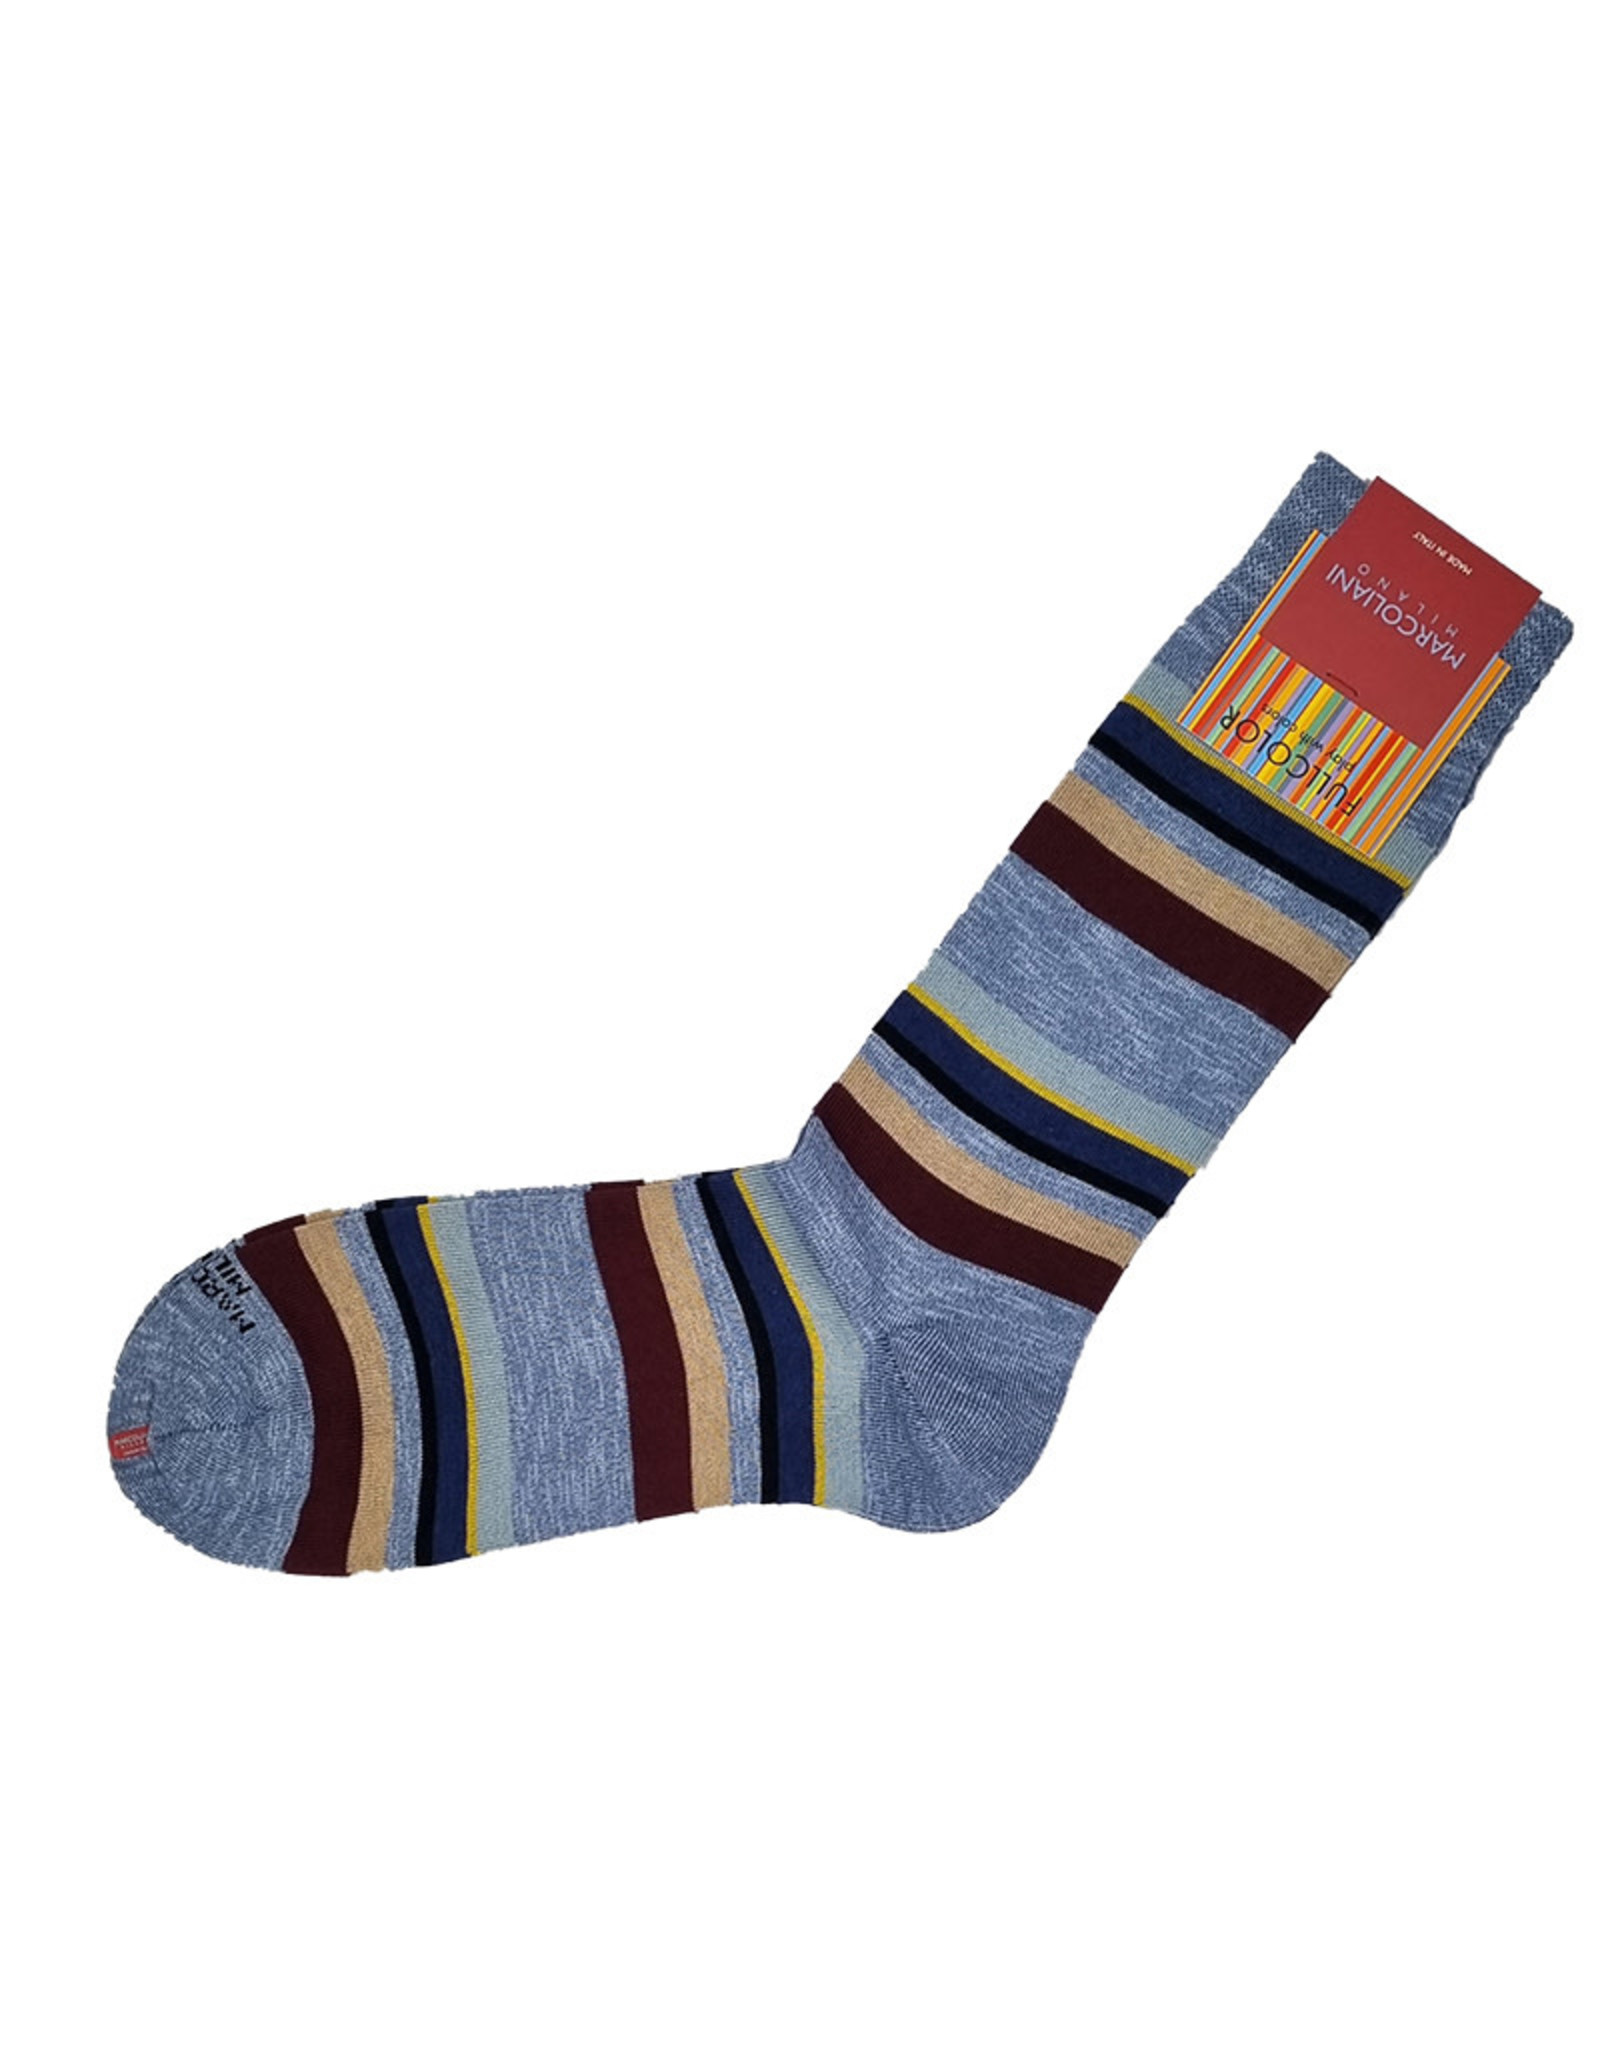 Marcoliani Marcoliani socks blue denim eclectic stripe